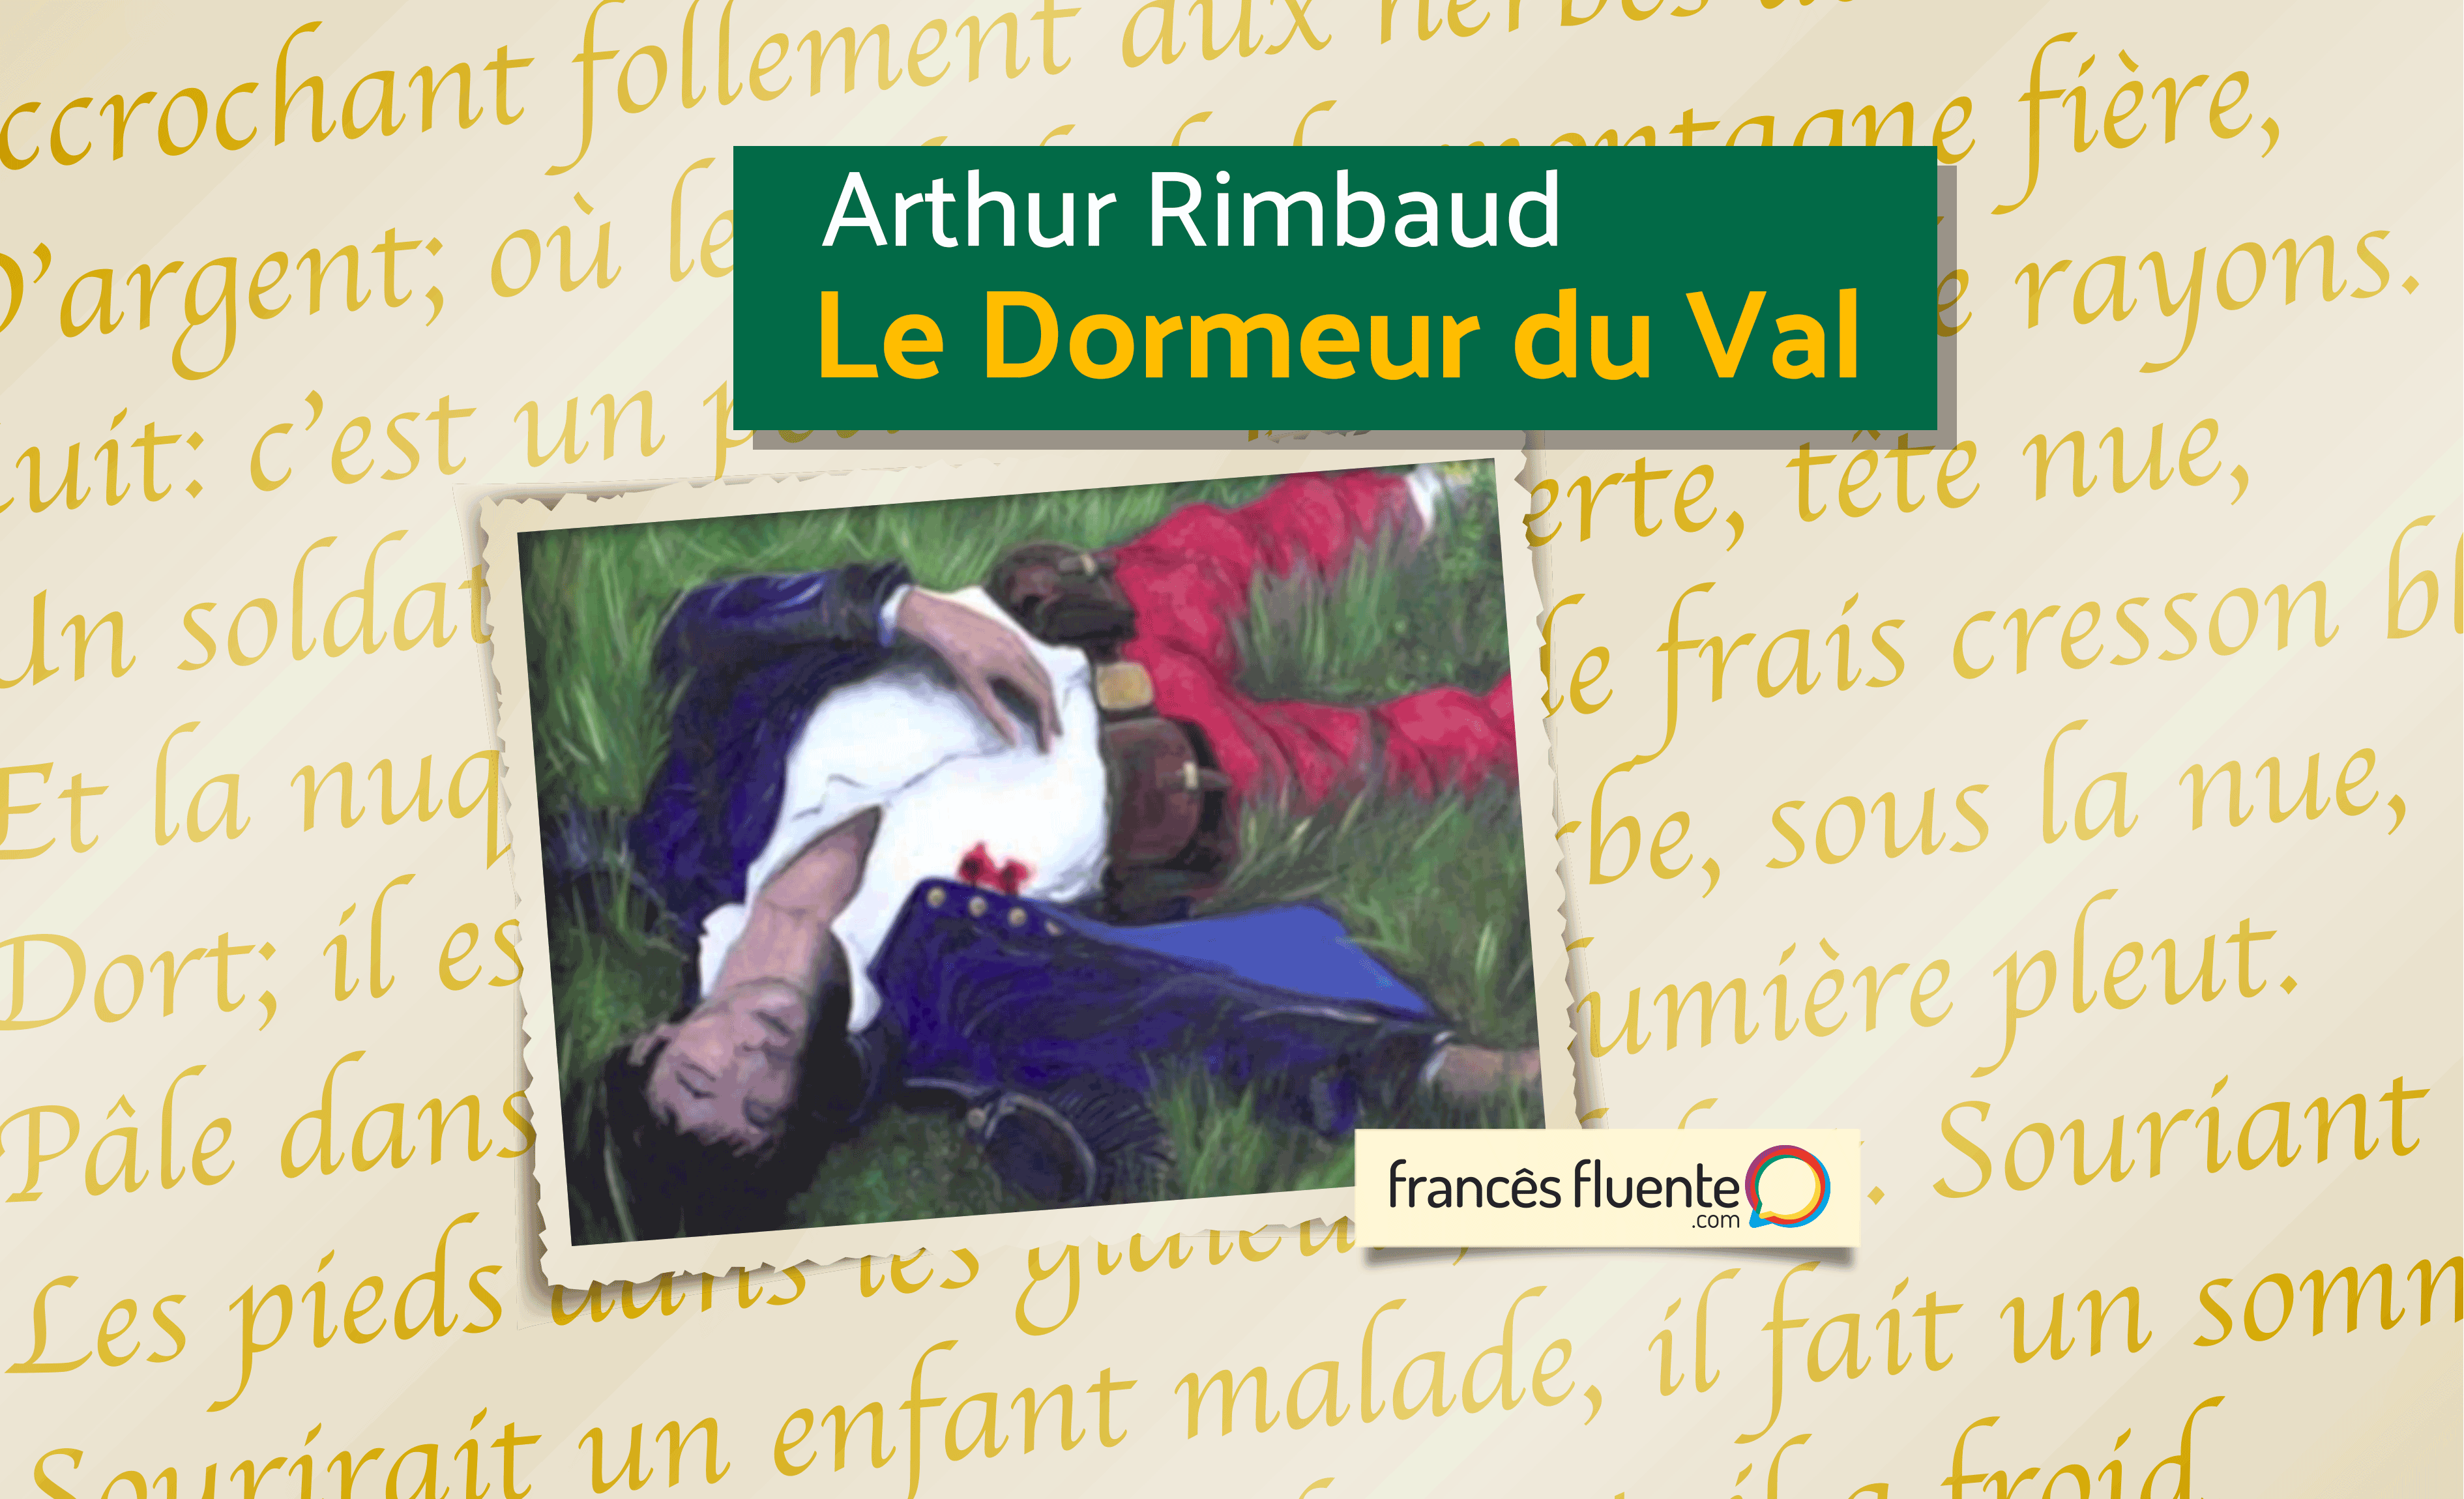 Le dormeur du val (Arthur Rimbaud) - Francês Fluente